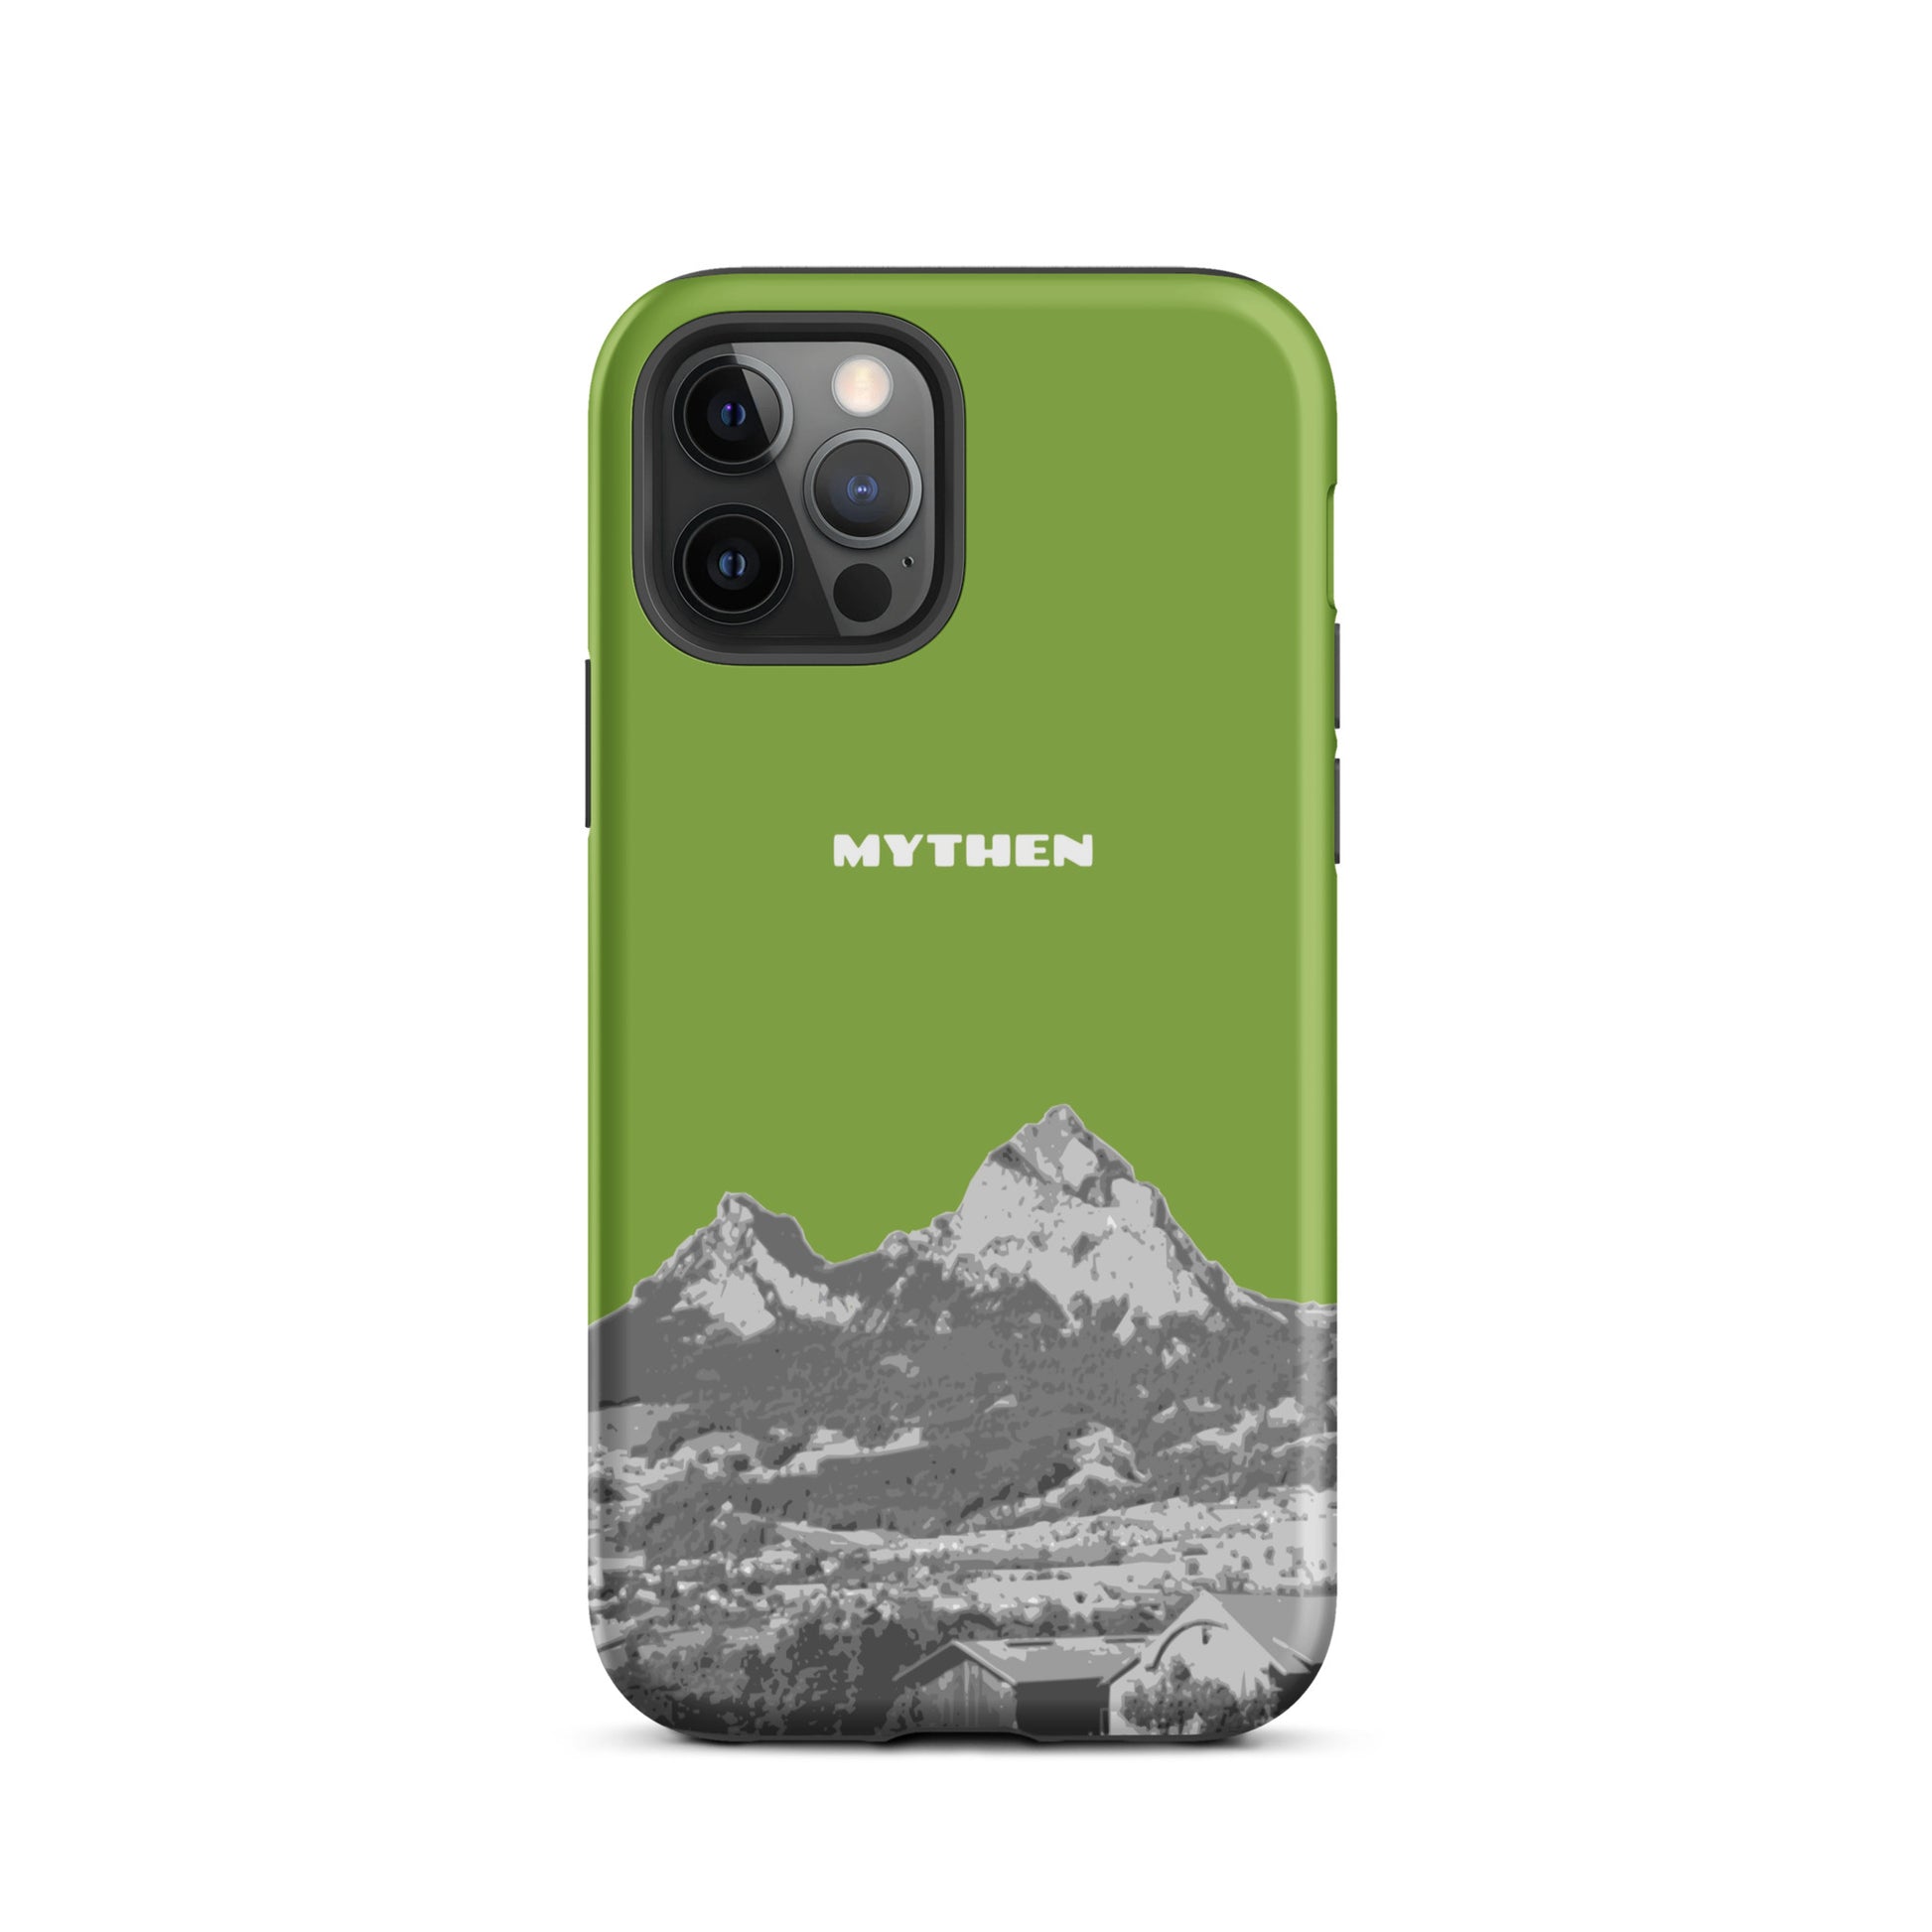 Hülle für das iPhone 12 Pro von Apple in der Farbe Gelbgrün, die den Grossen Mythen und den Kleinen Mythen bei Schwyz zeigt. 